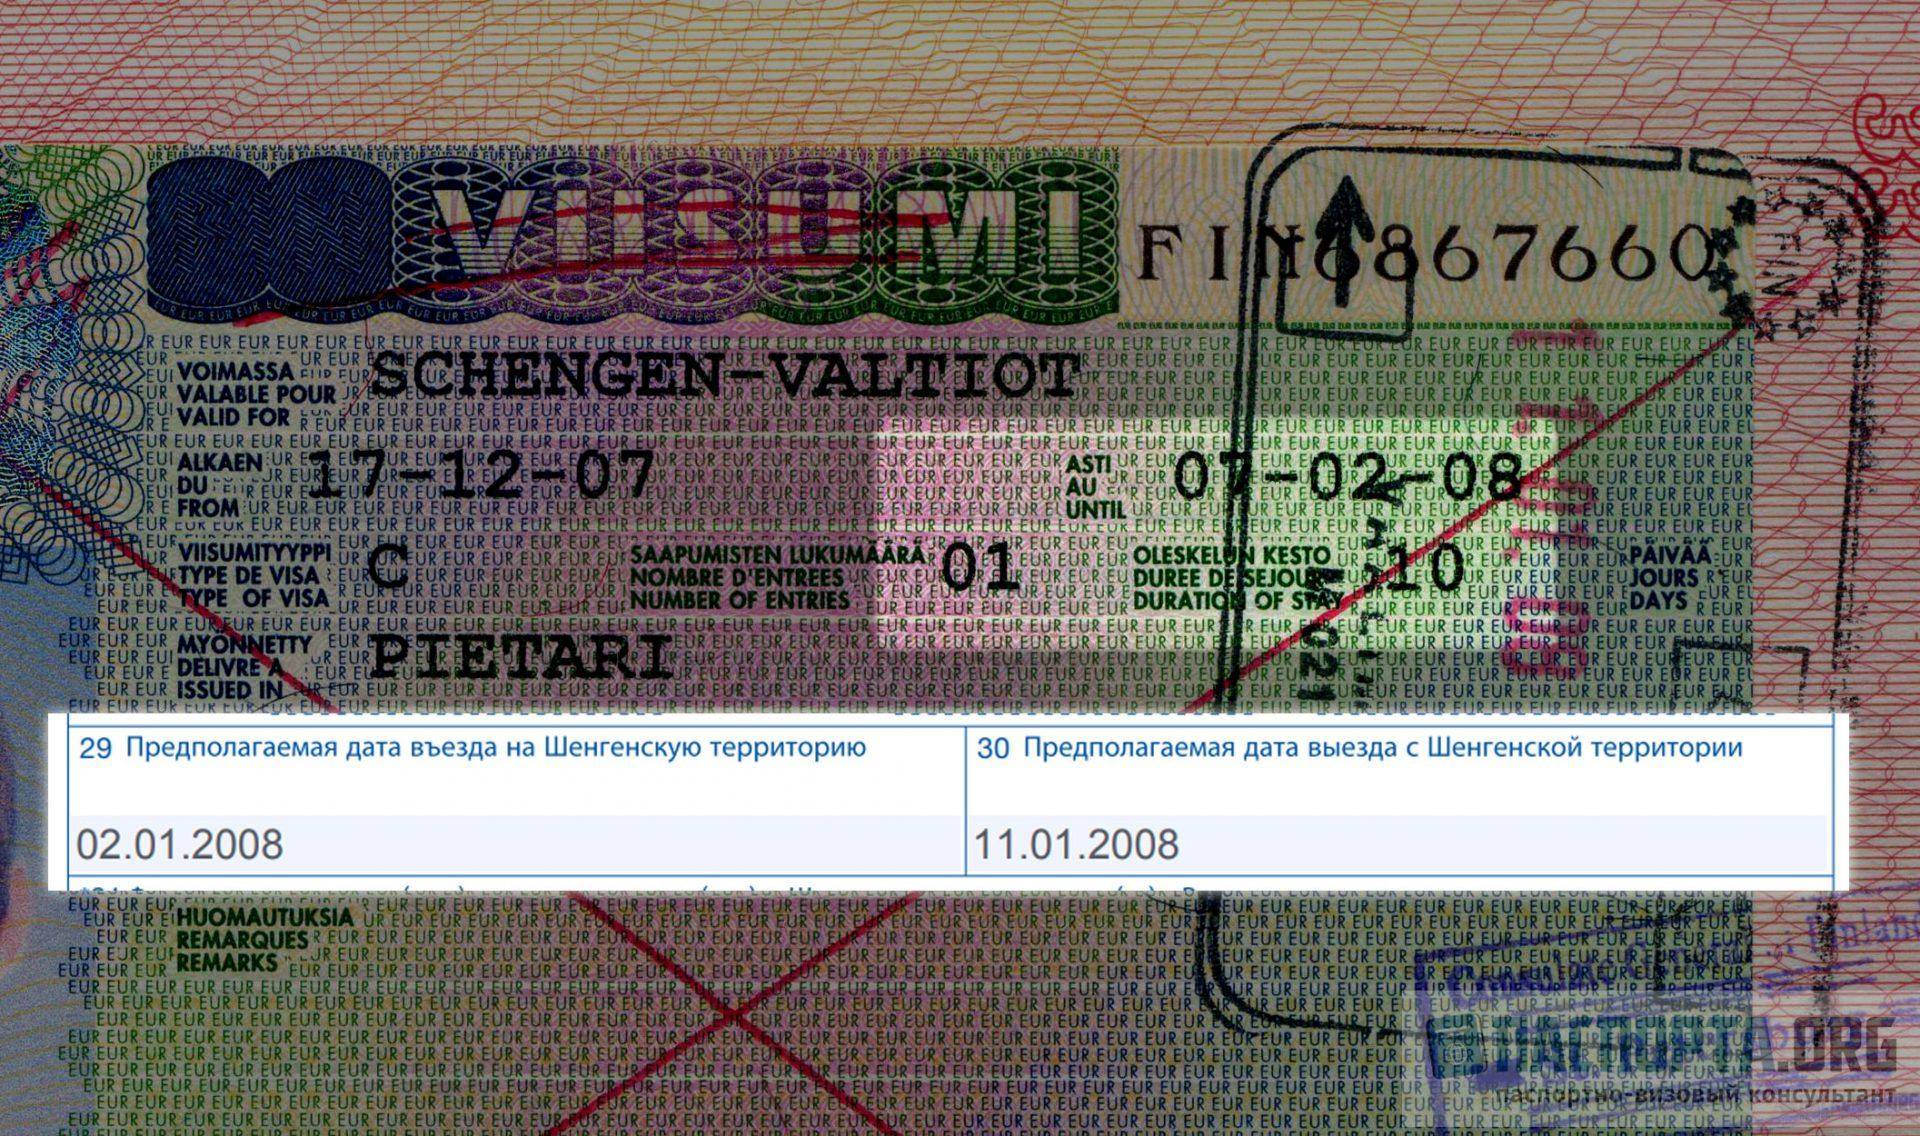 Сколько стоит шенгенская виза? оформляем сами